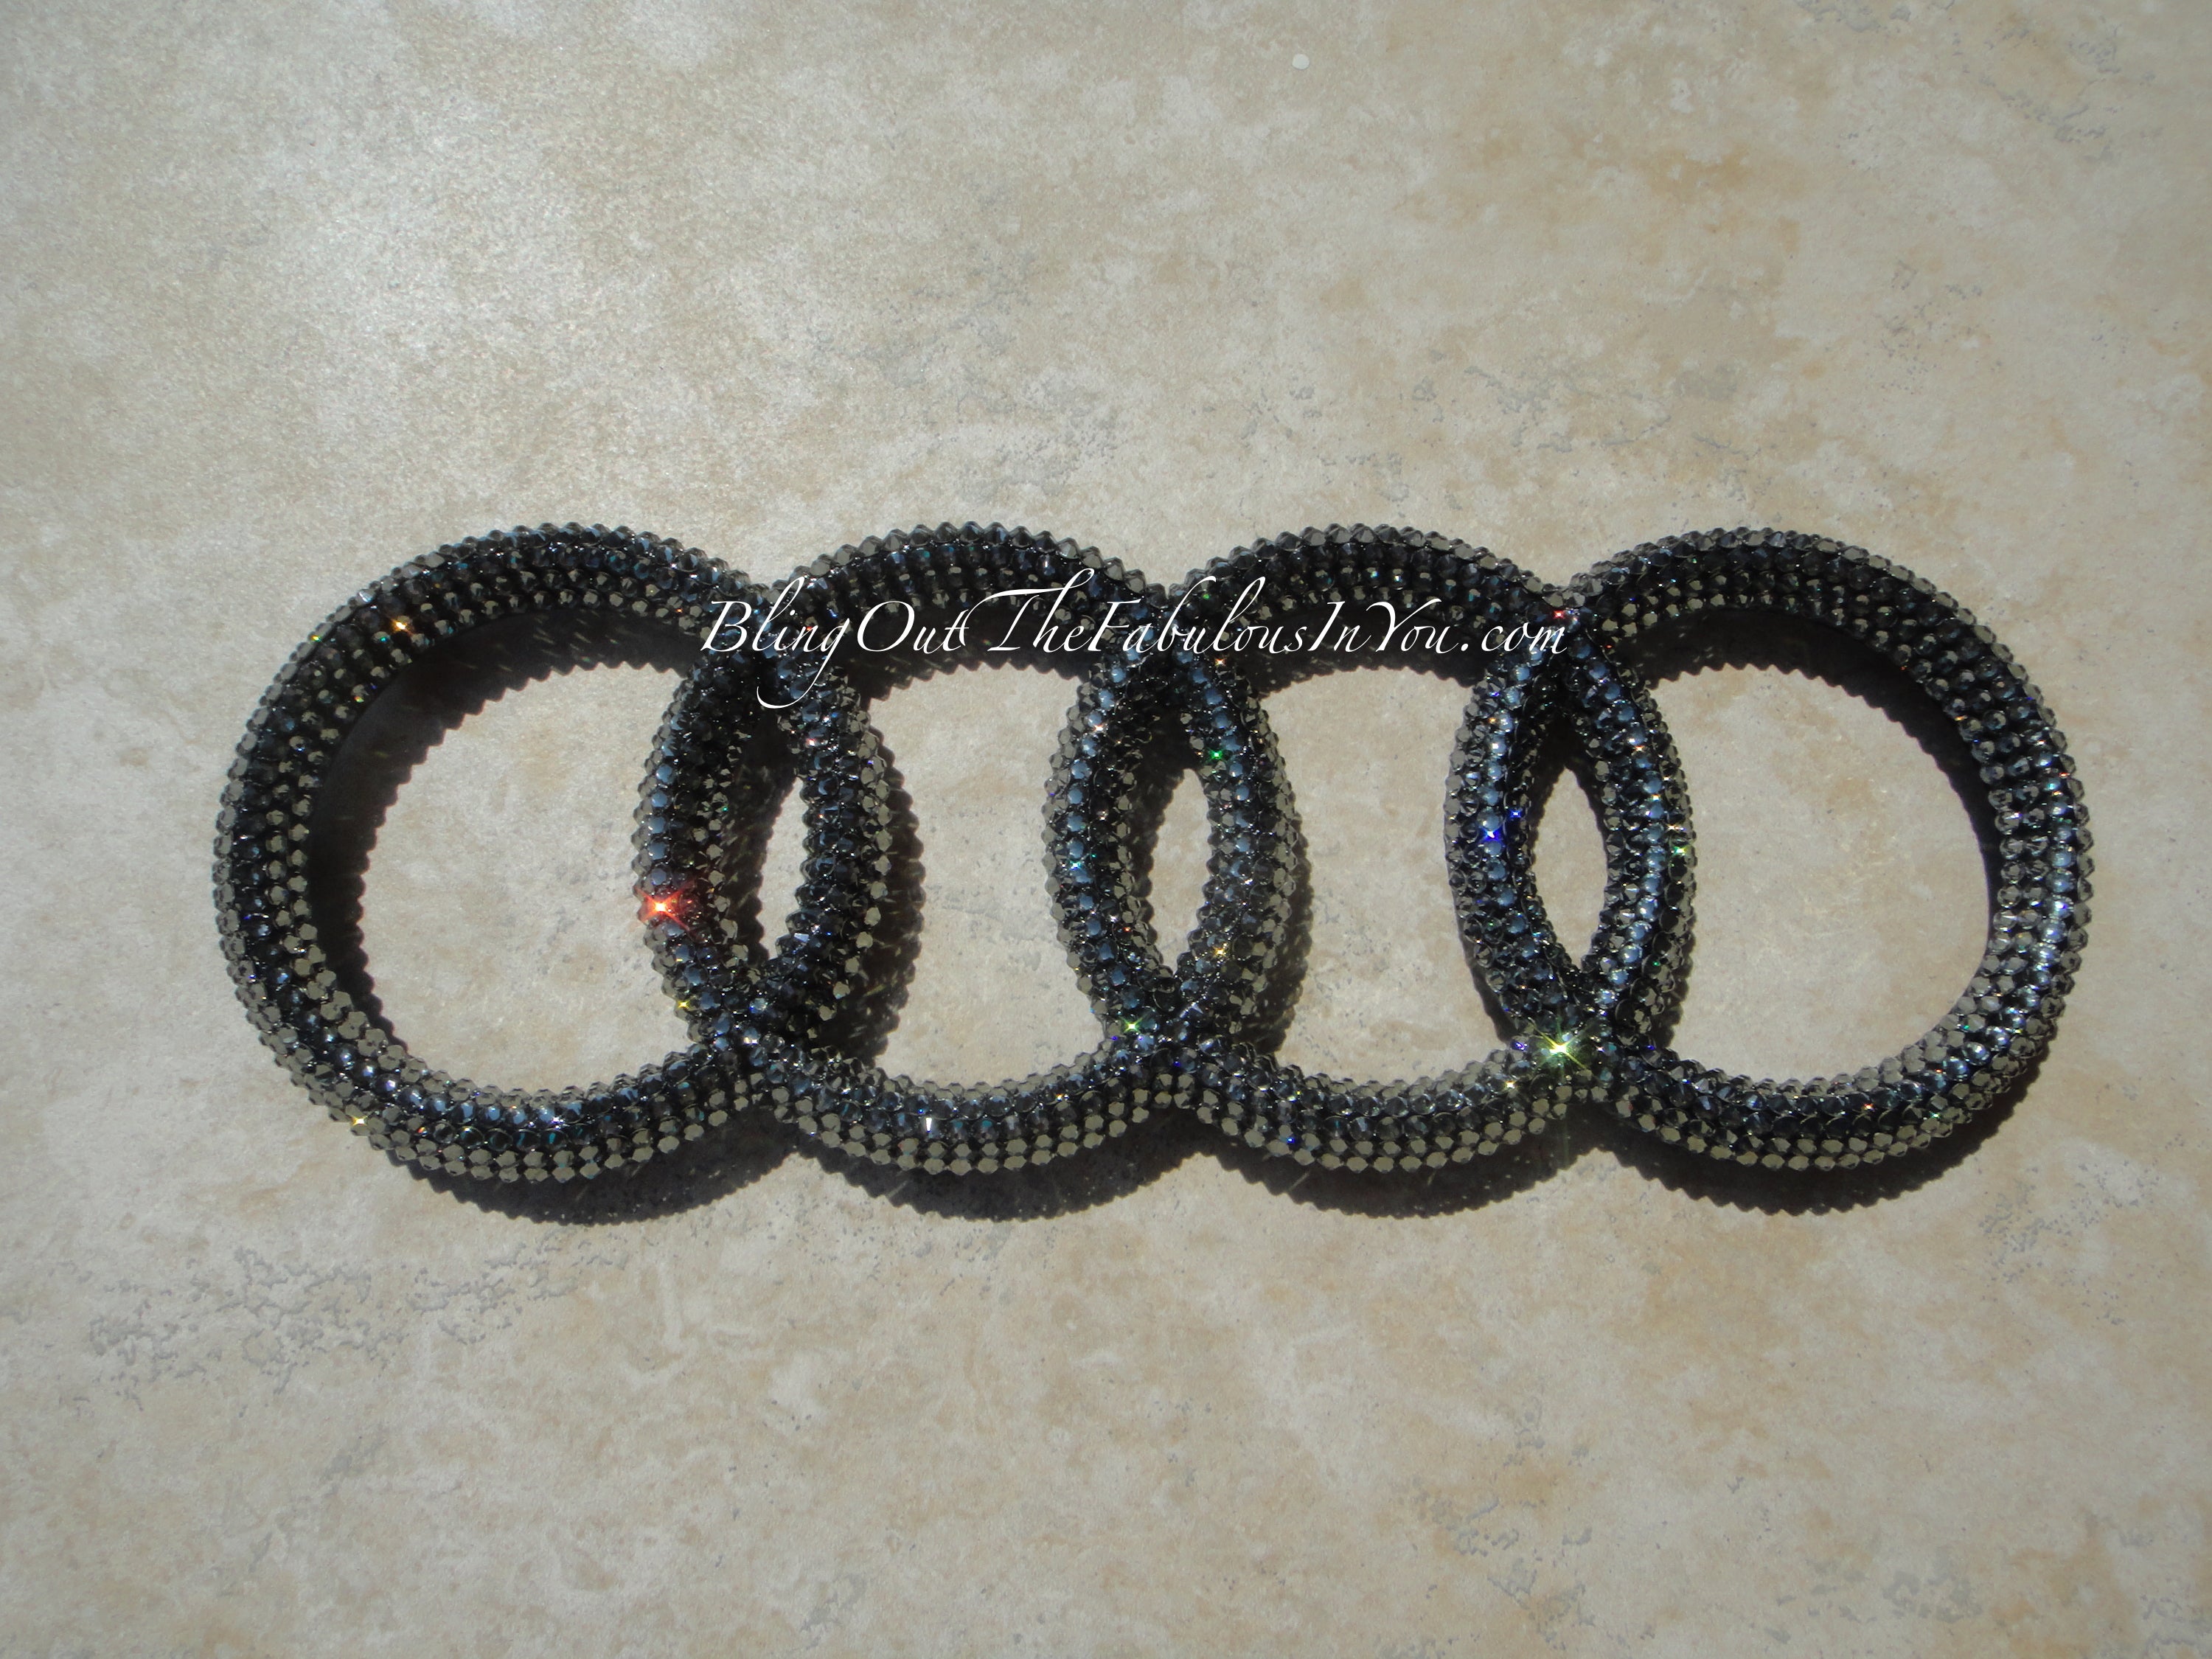 Audi Swarovski Emblem – crystalfetish